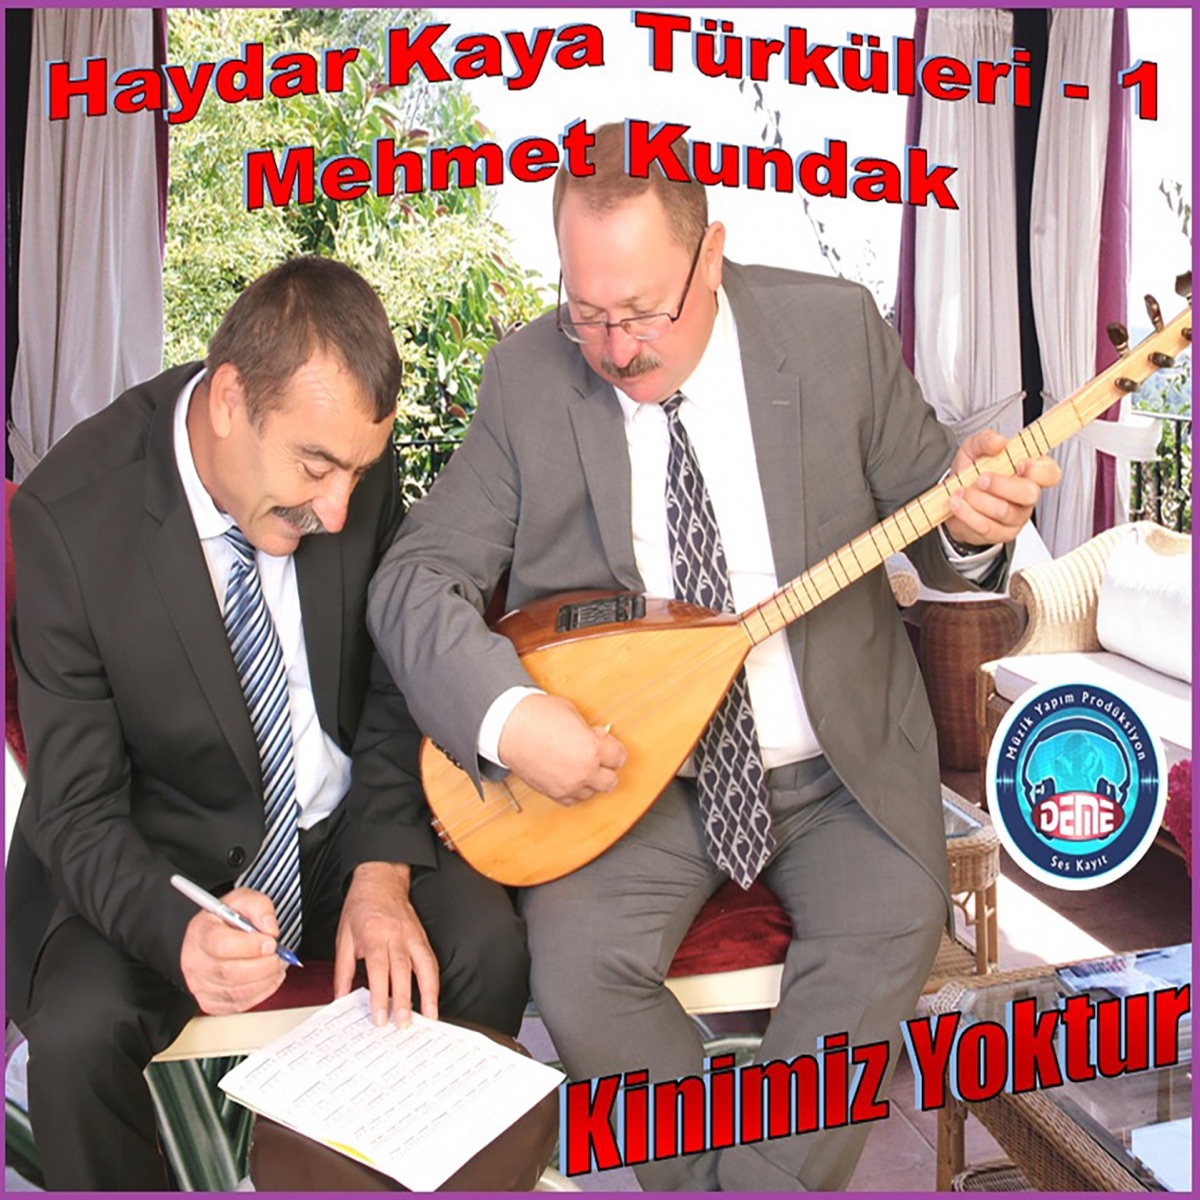 Haydar Kaya Türküleri, Vol. 1 (Kinimiz Yoktur) by Mehmet Kundak on Apple  Music